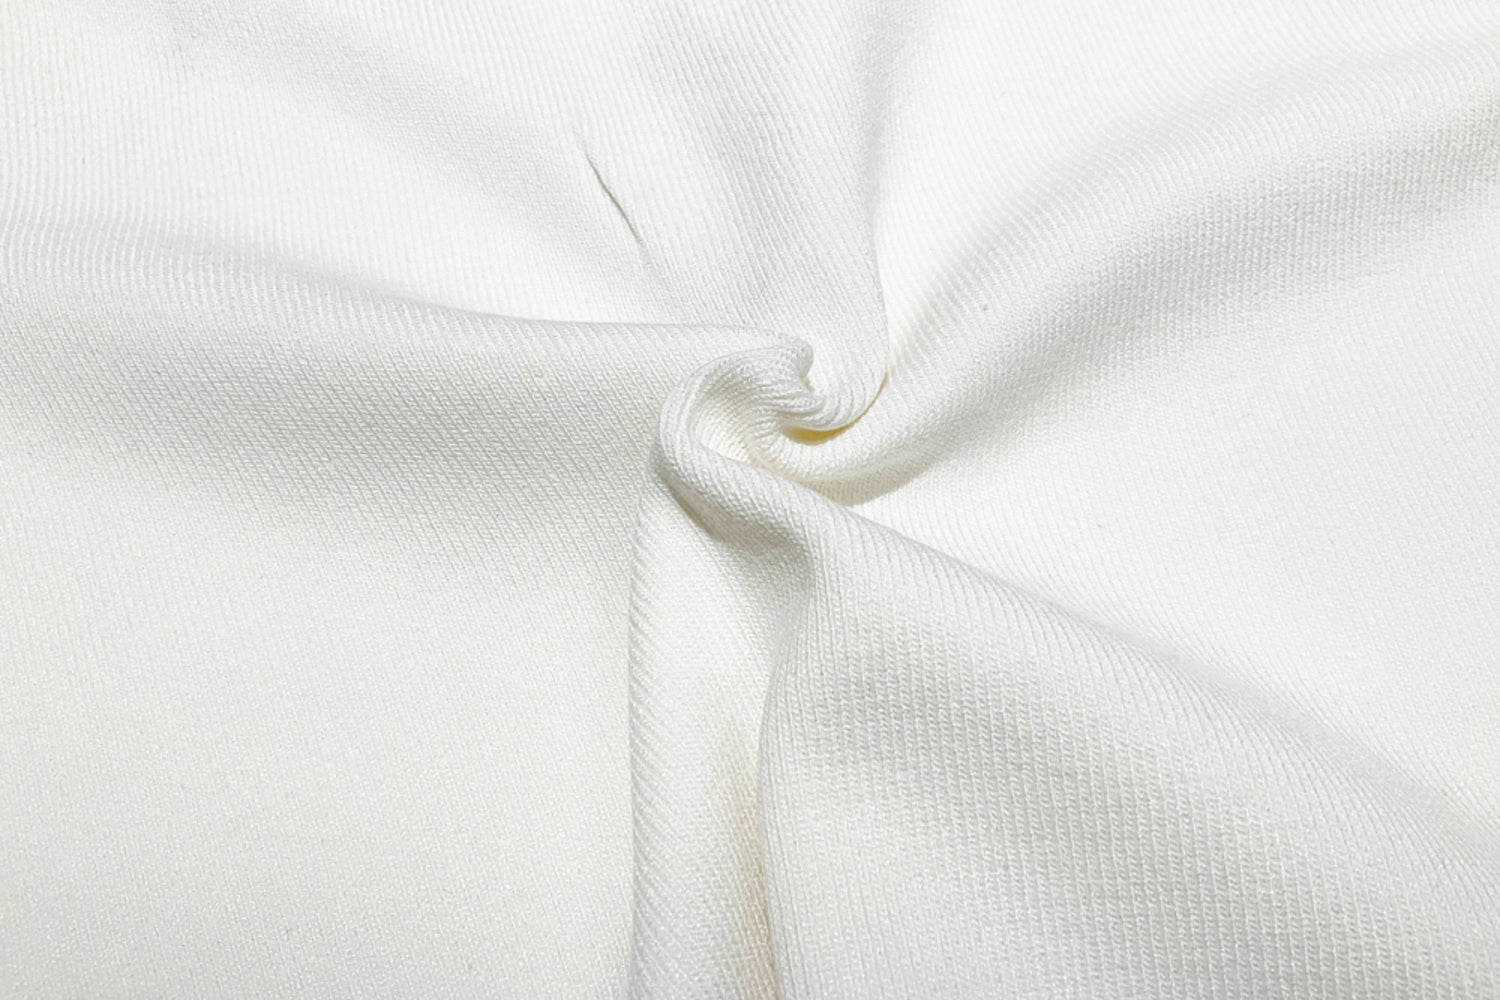 SOMESOWE White Stitched Short Sweater | MADA IN CHINA